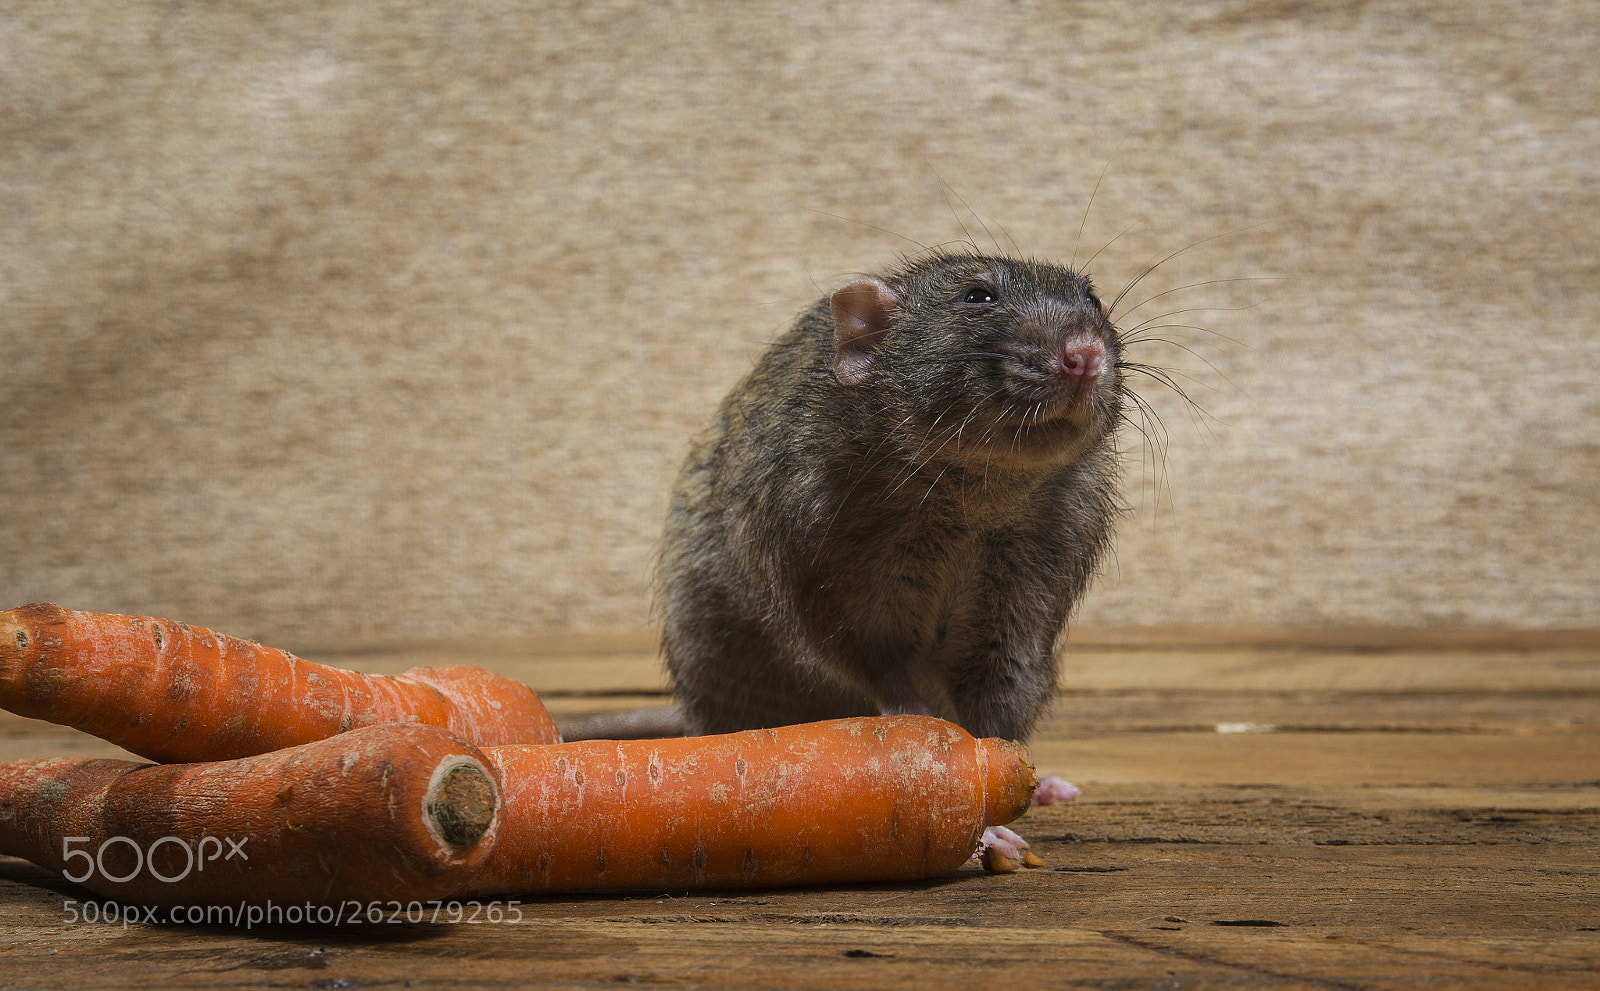 Nikon D5100 sample photo. Rat eats a carrot. photography